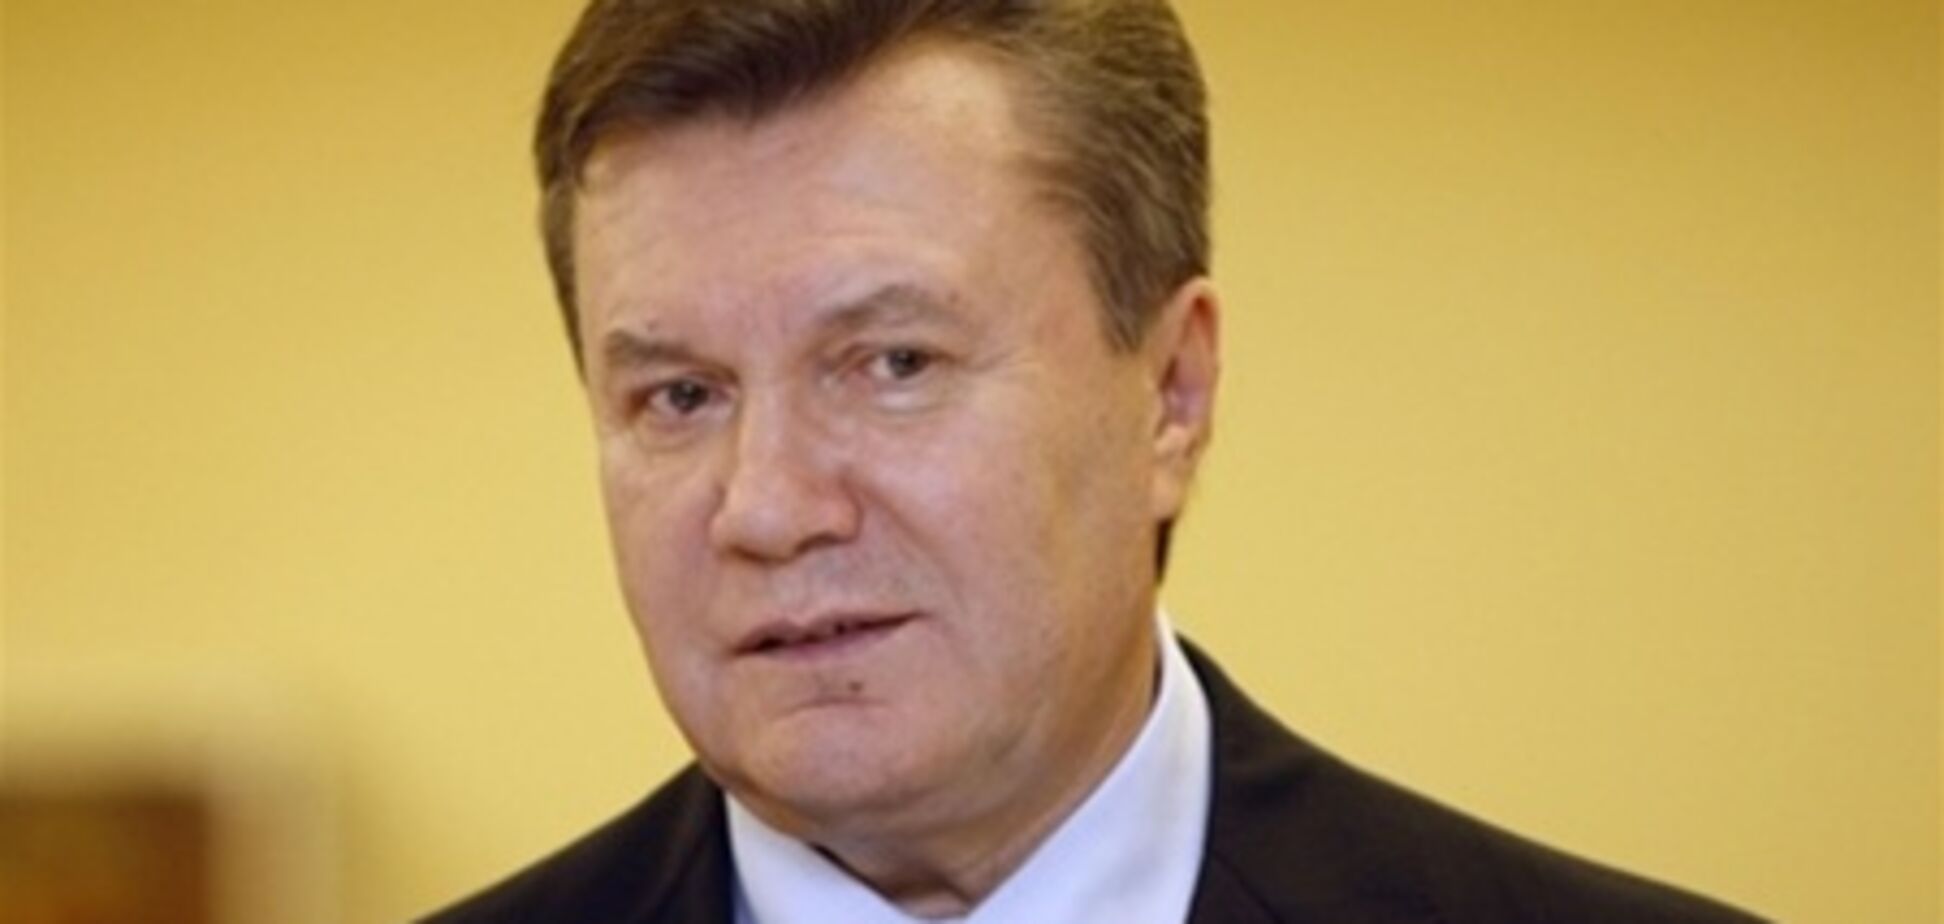 Социнициативы Януковича могут вырастить инфляцию в стране